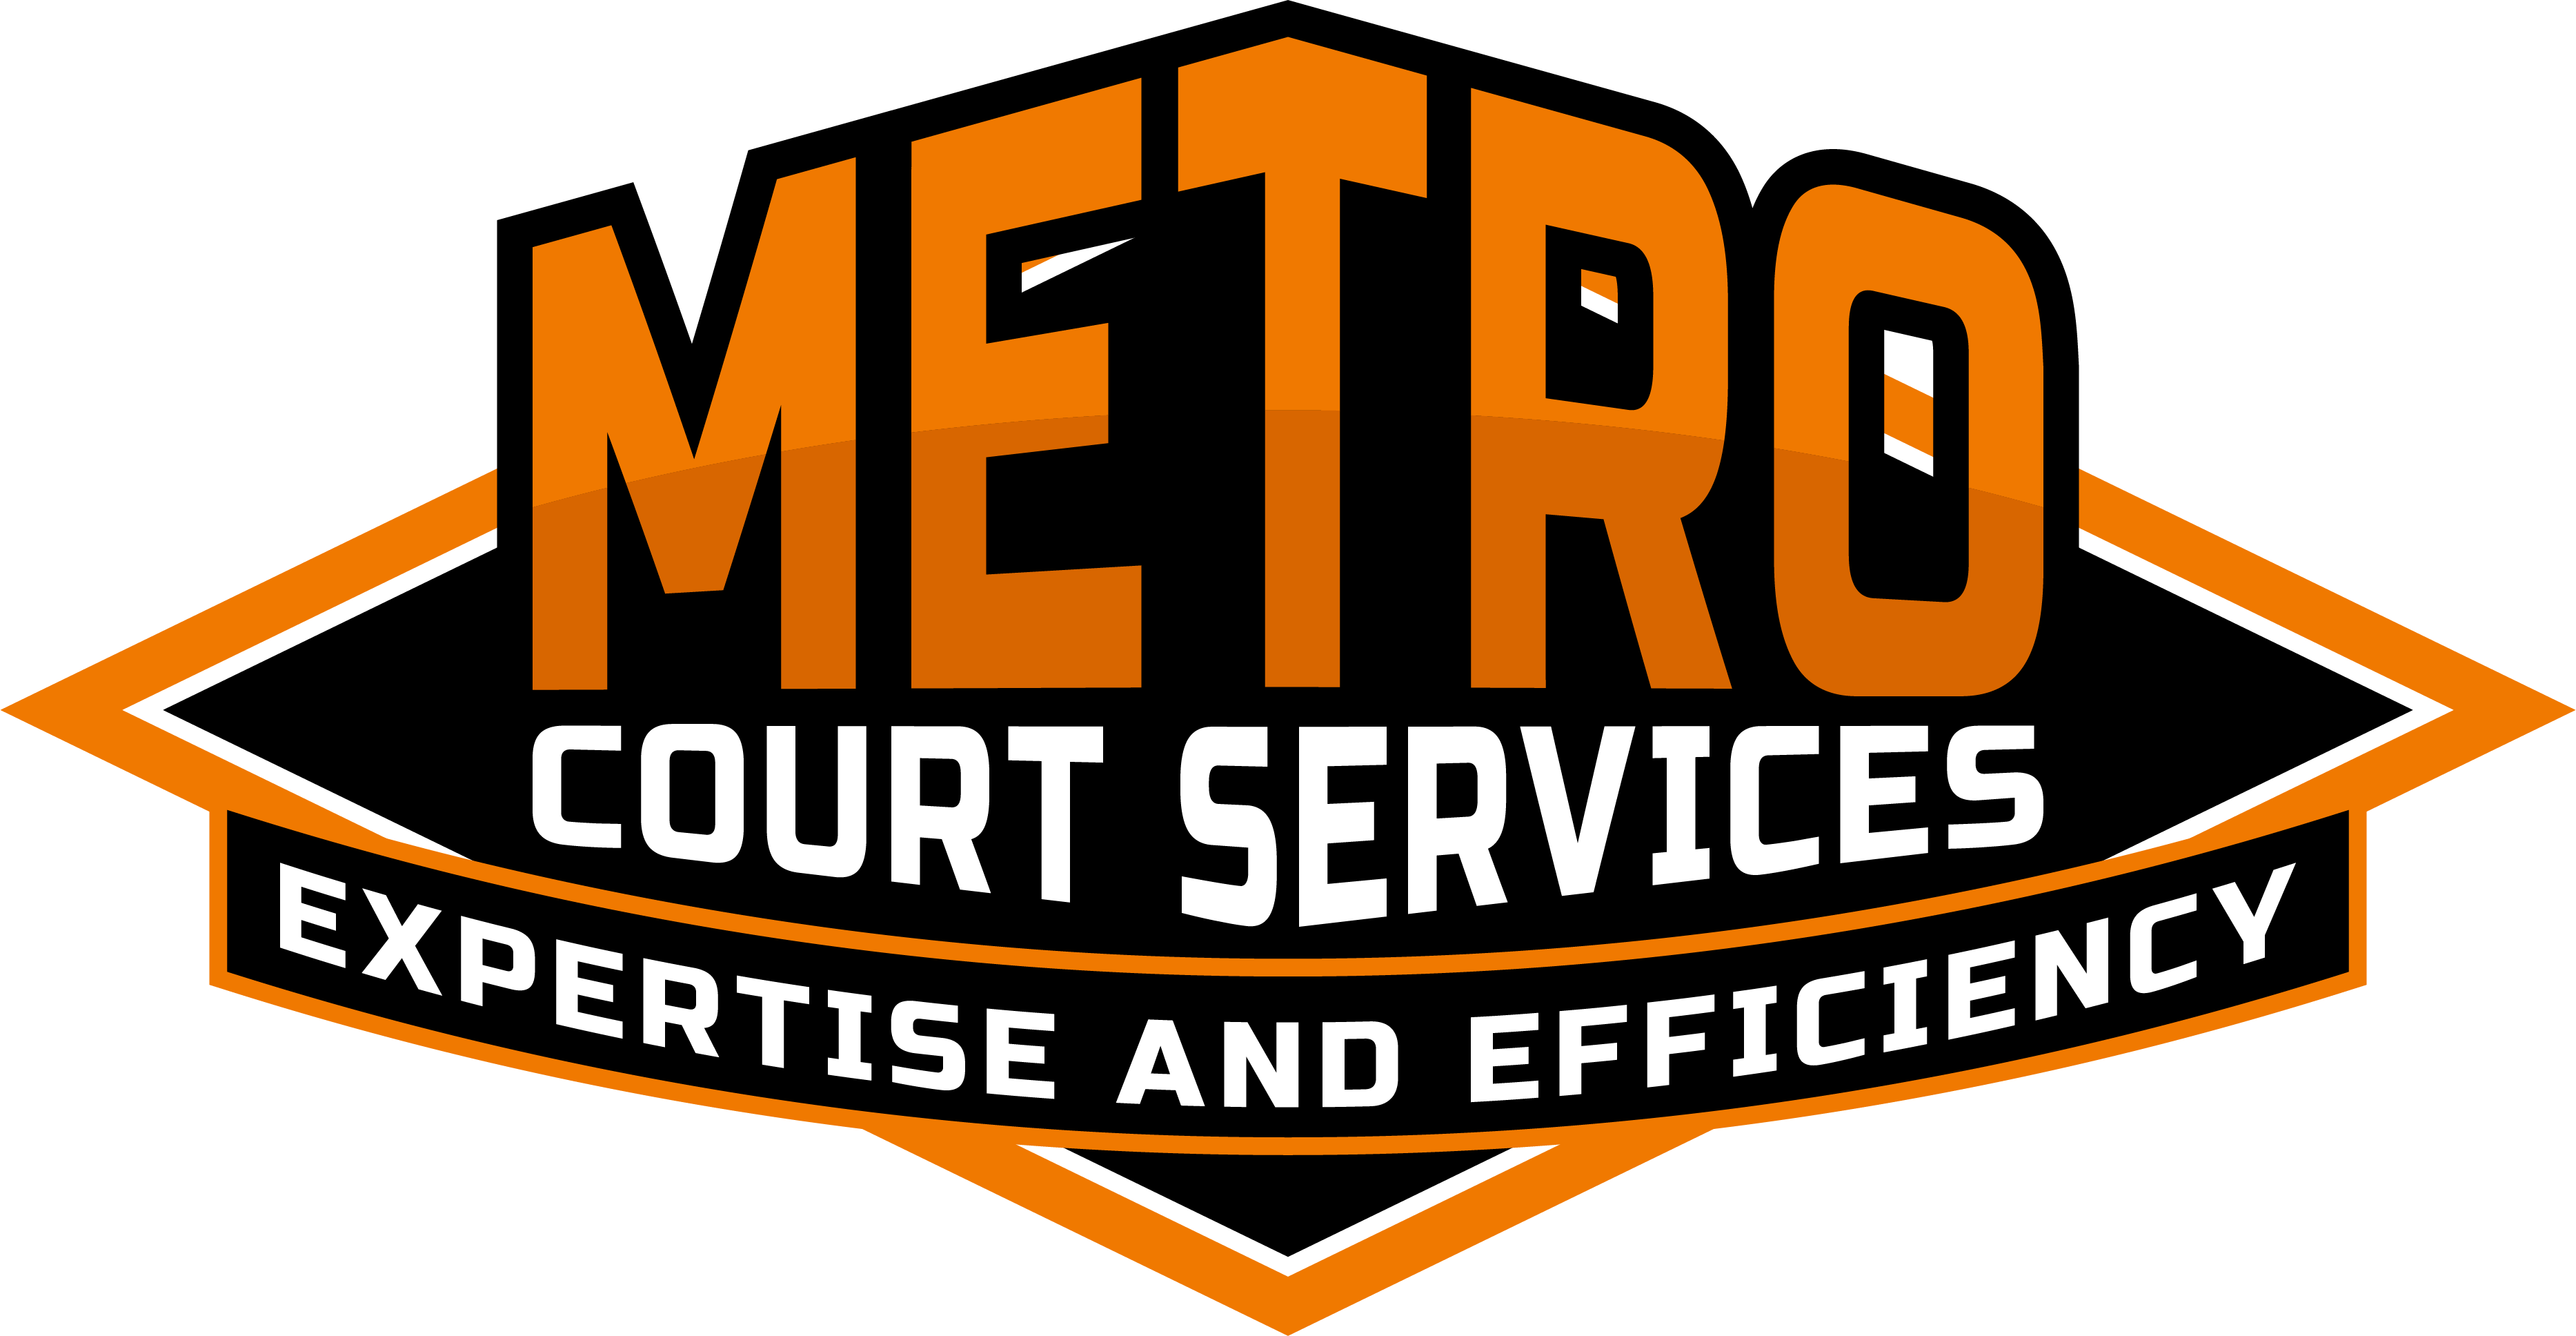 Metro Court Services